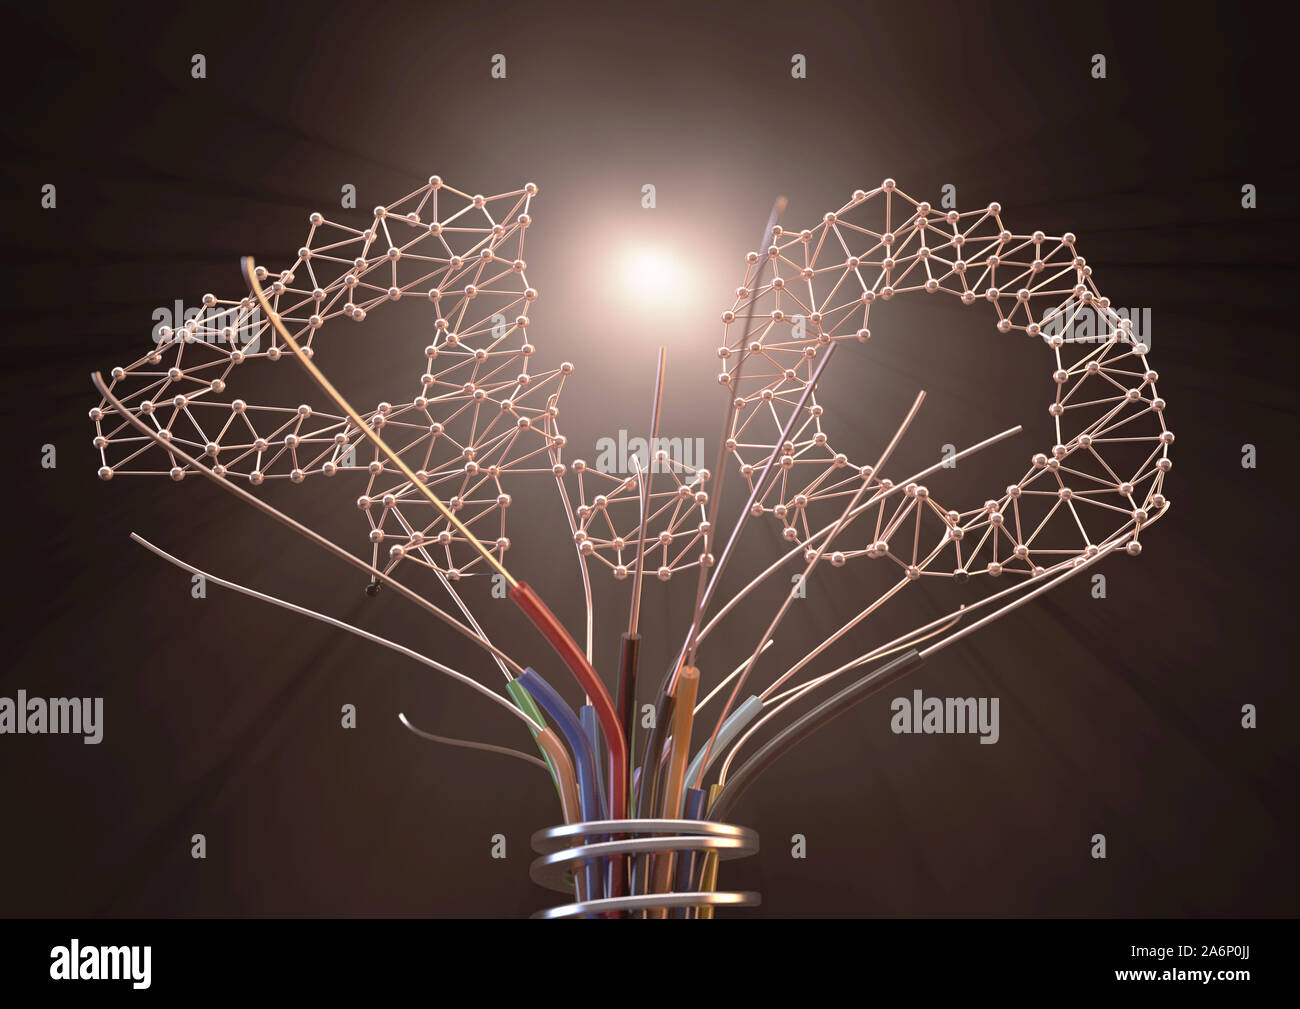 Un concepto futurista hechas de árbol de cable de cobre aislado y el número 4.0 en un diseño del plexo depictiong la cuarta revolución industrial - 3D Render Foto de stock